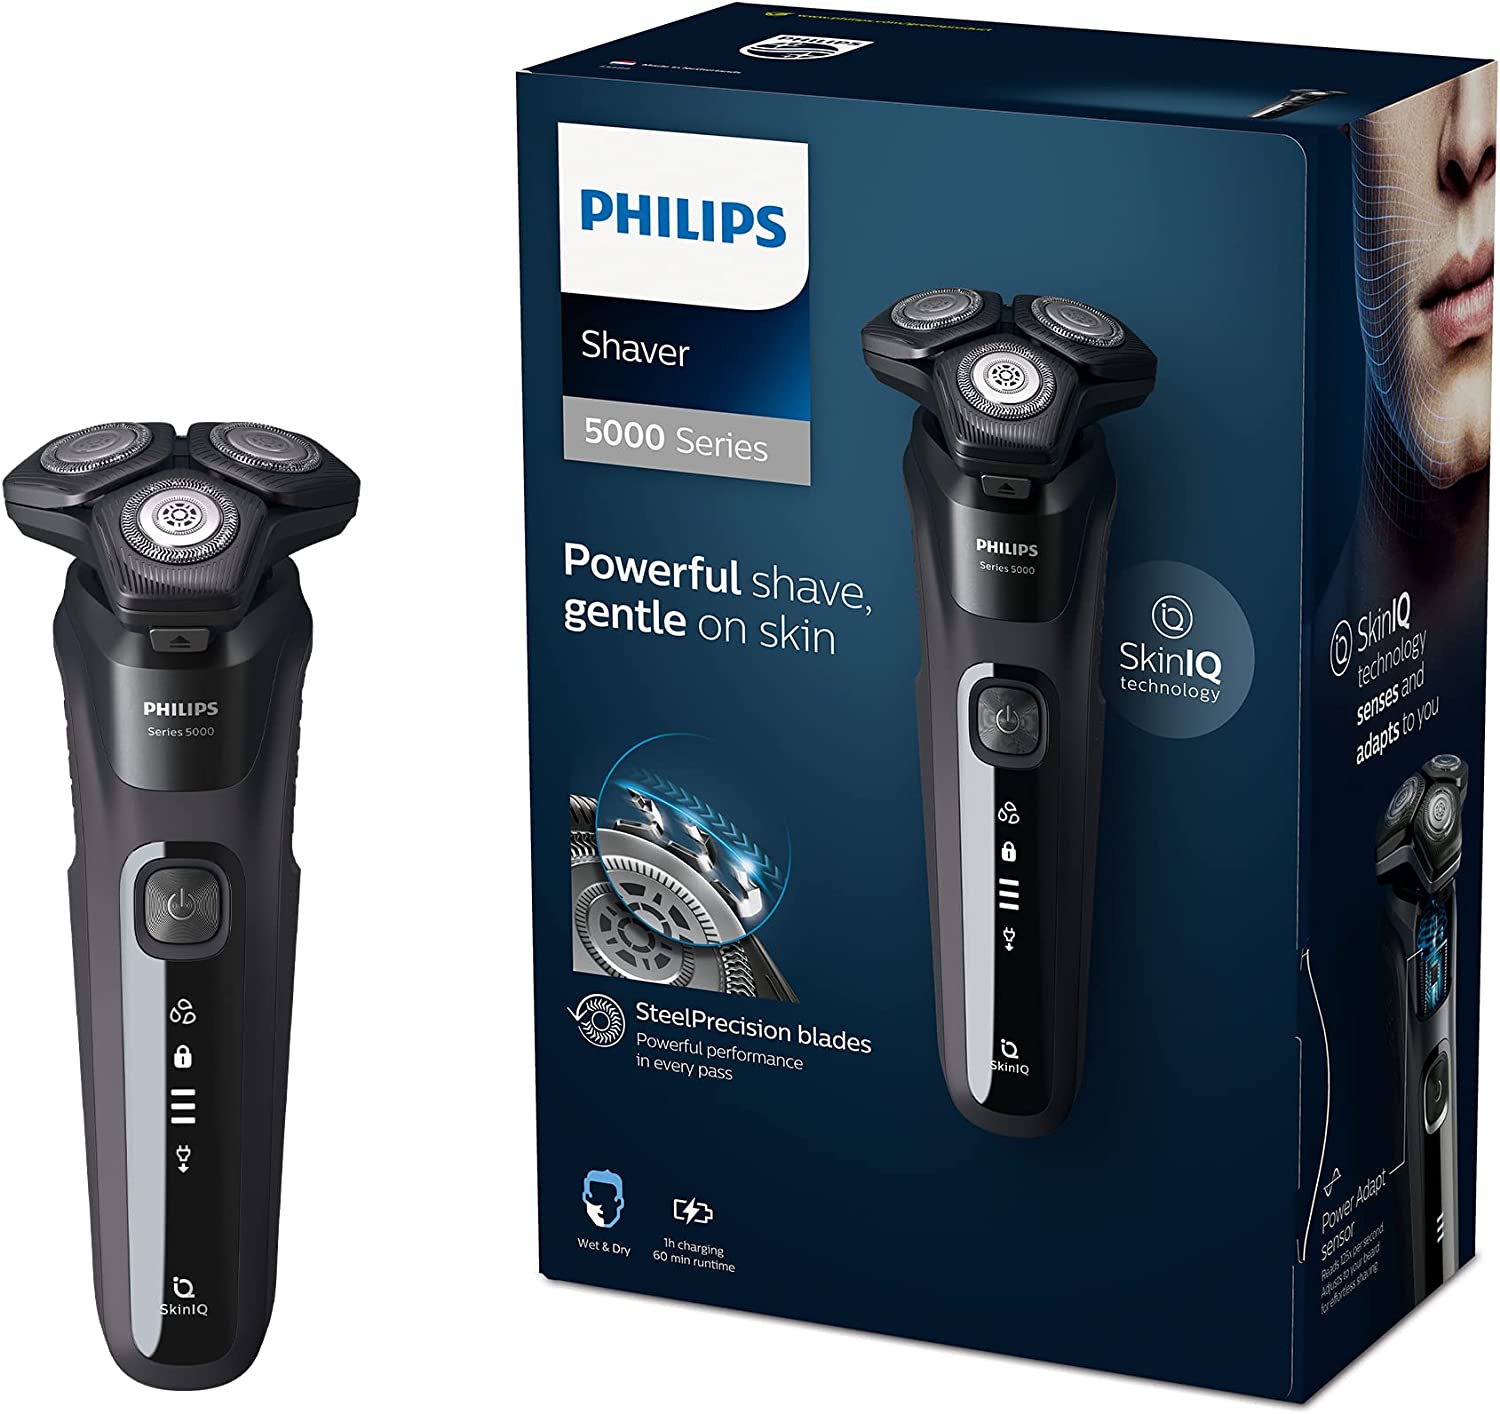 Philips Shaver Series 5000 vs Philips Shaver Series 3000 vs Philips Shaver Series 9000 vs Philips Shaver Series 7000